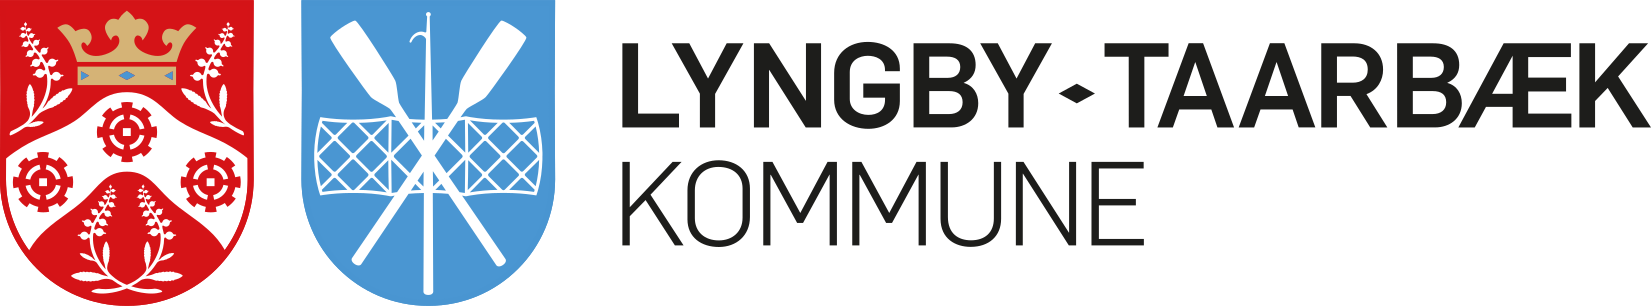 Lyngby-taarbæk Kommune Rådhuset